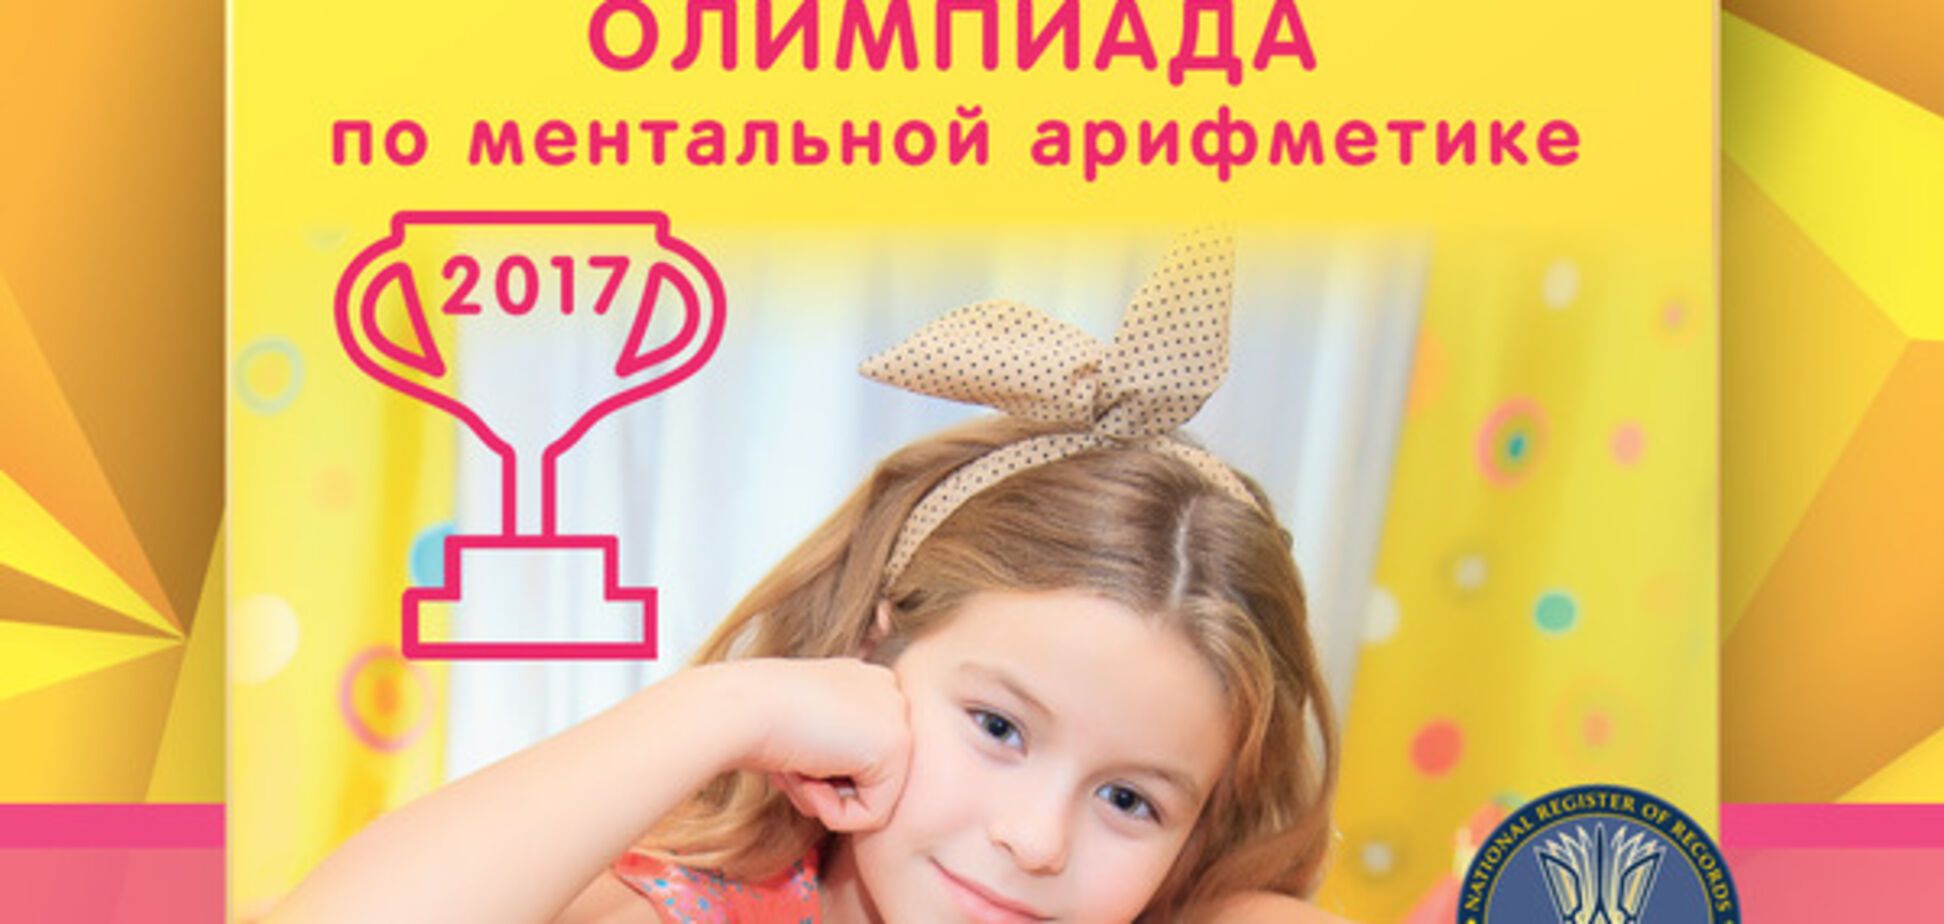 500 школьников установят рекорд одновременного счета - в Киеве